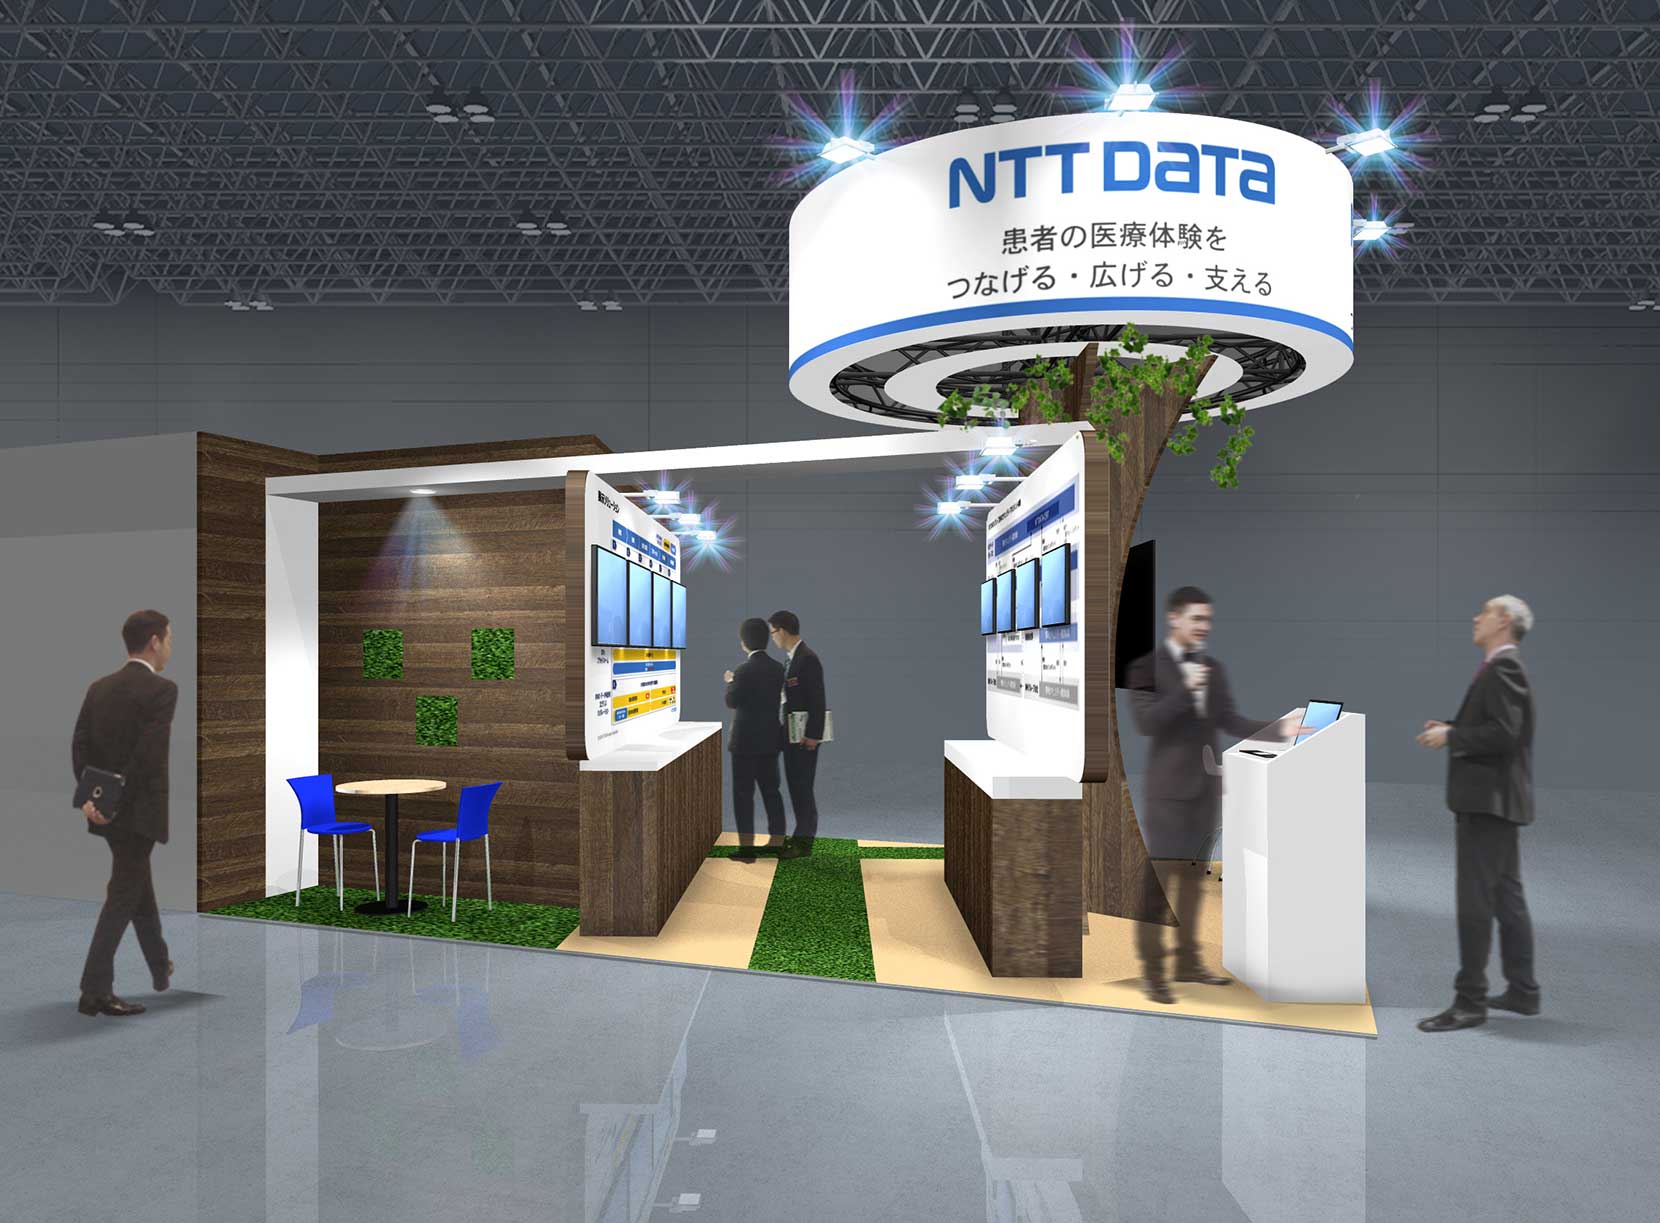 NTTデータブースイメージ